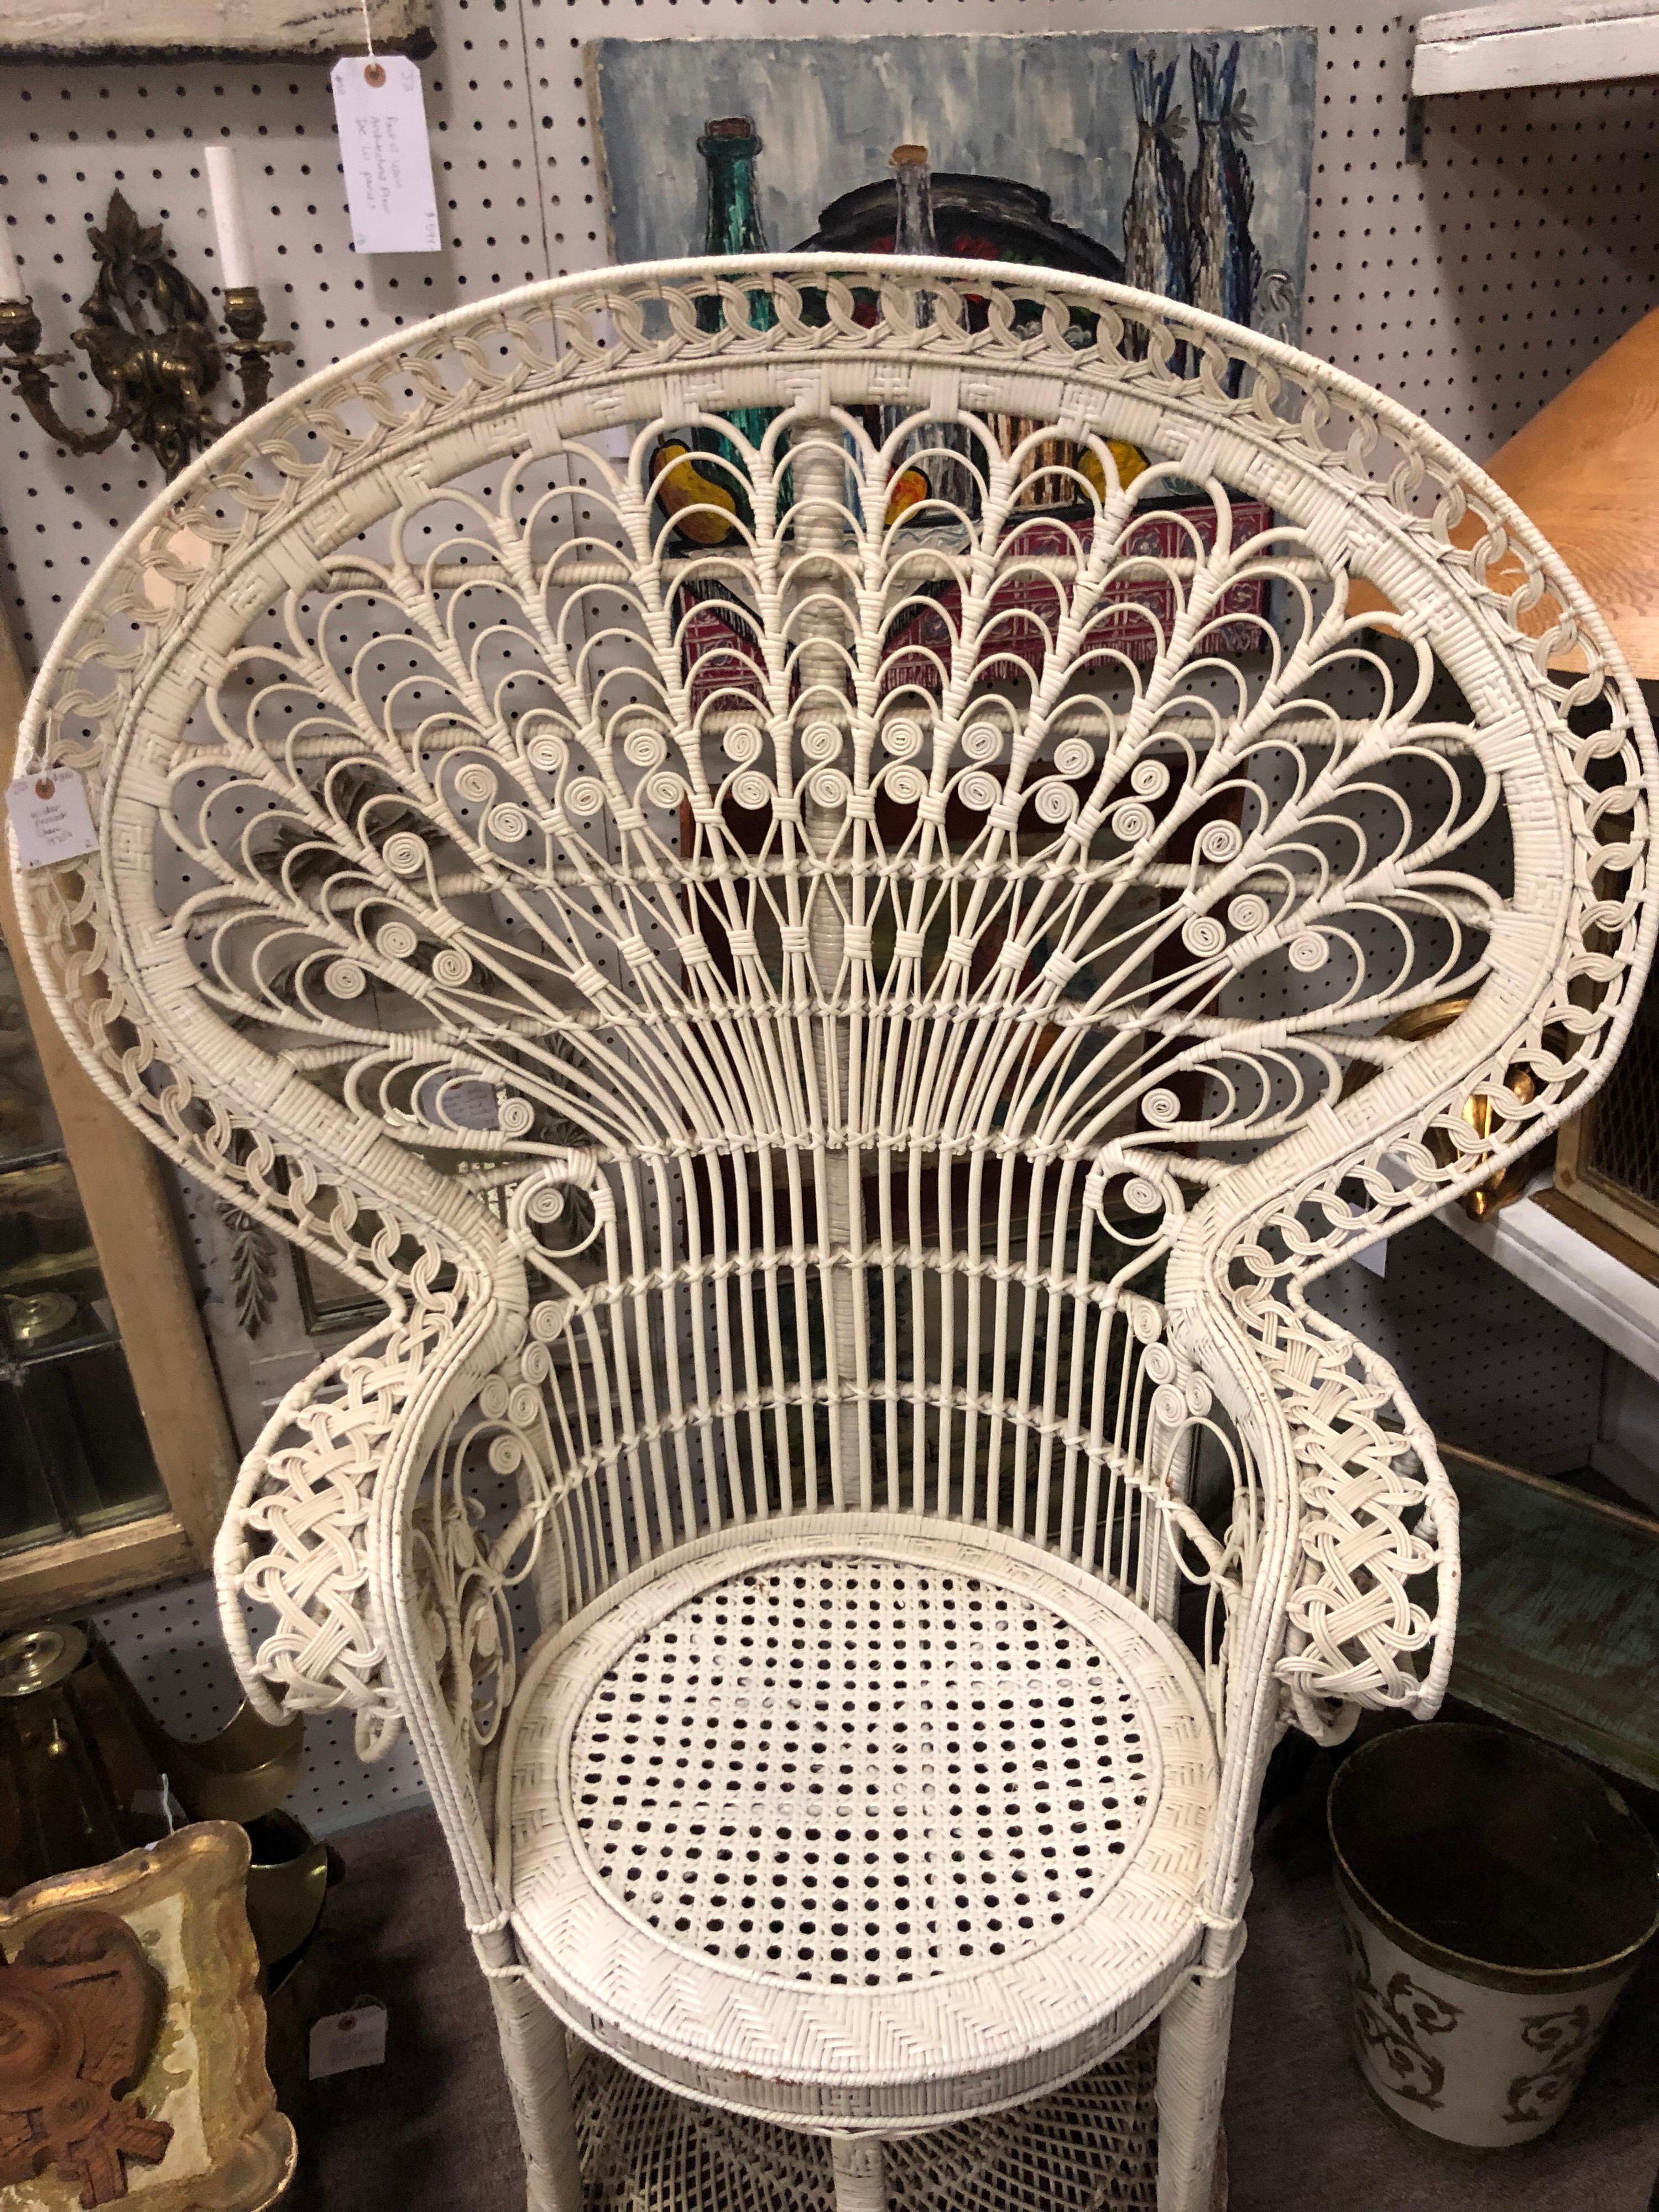 rattan throne chair